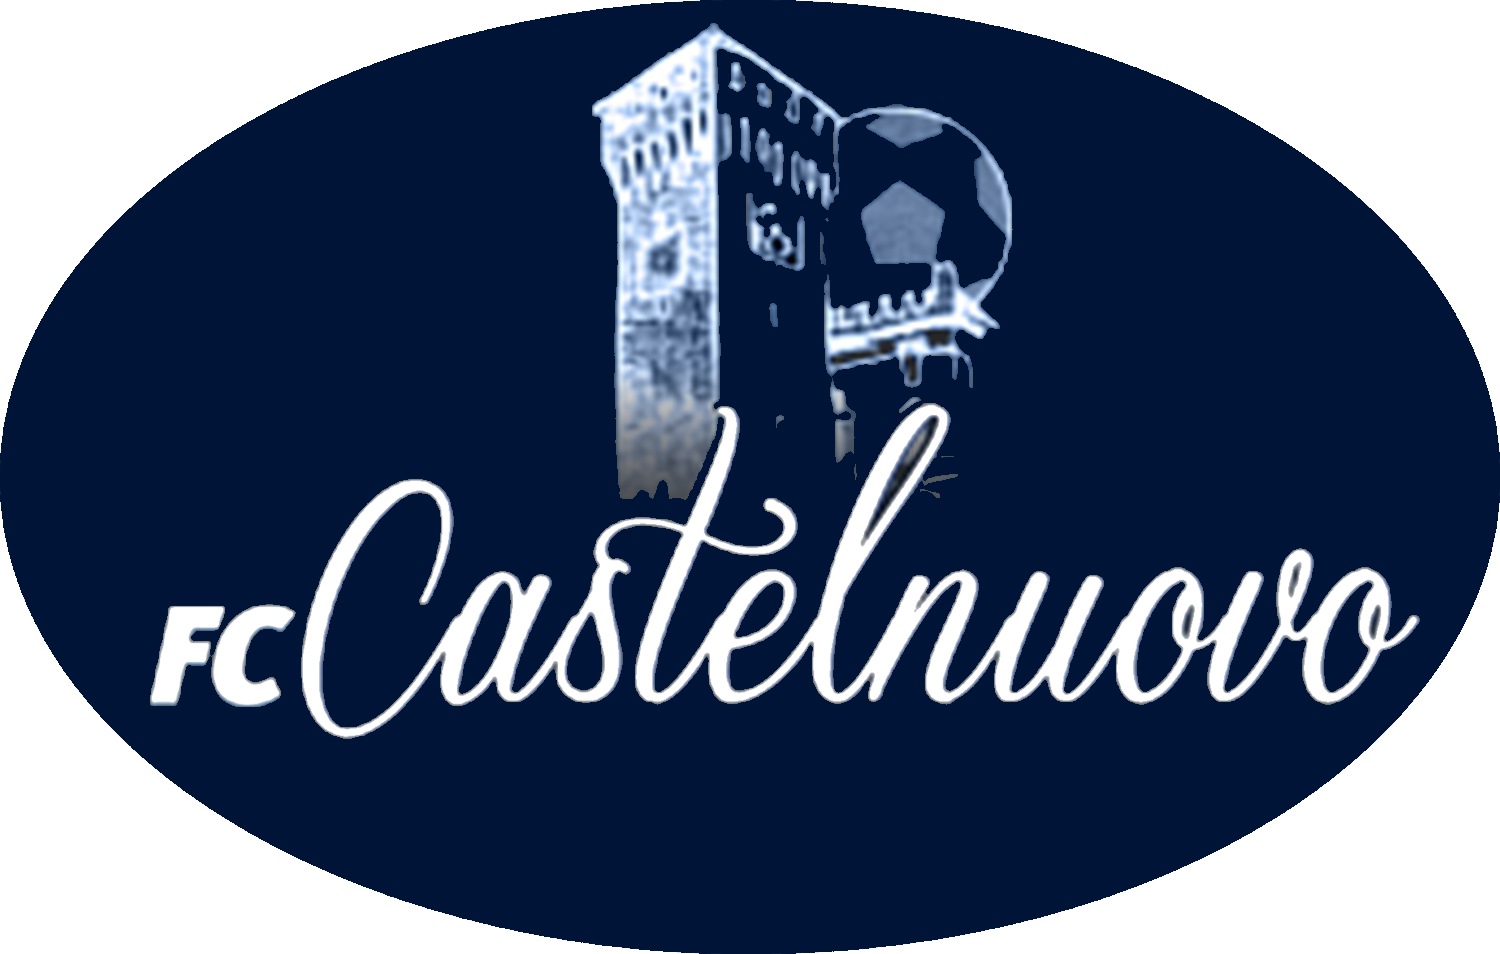 FC CASTELNUOVO v GANACETO